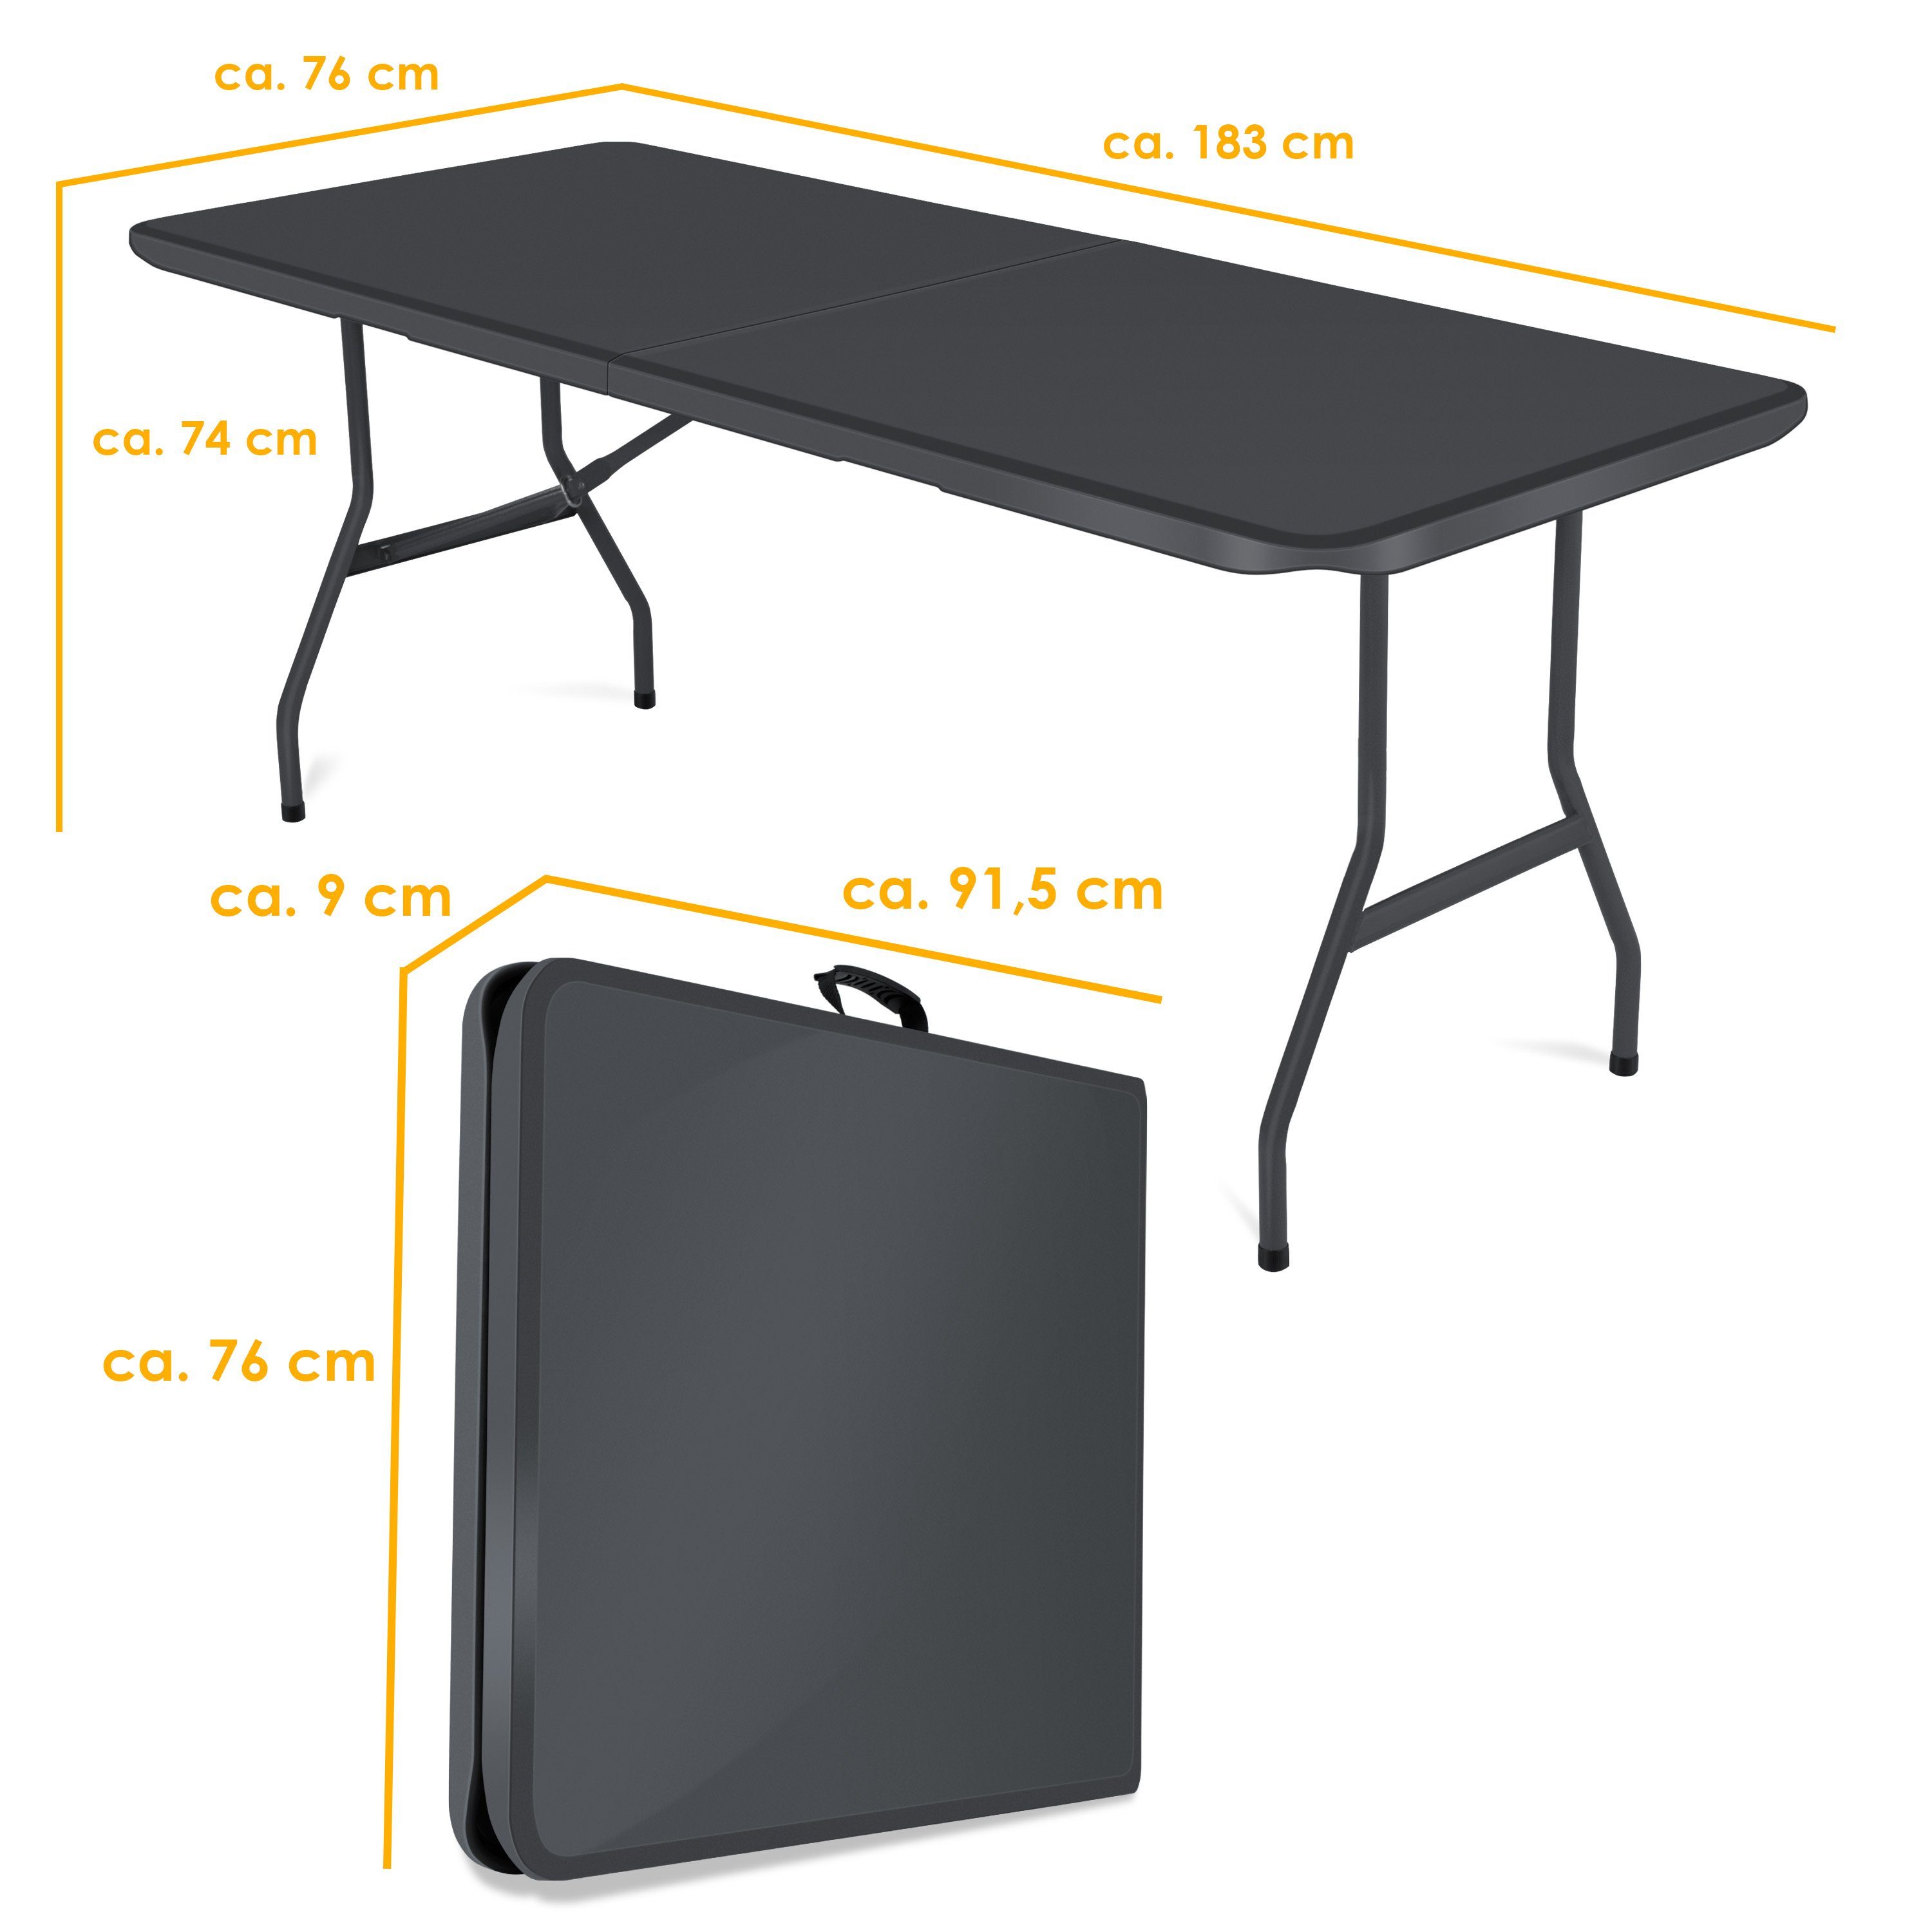 KESSER Tabletttisch, anthrazit cm 183x76 Campingtisch Kunststoff Tisch klappbar Buffettisch